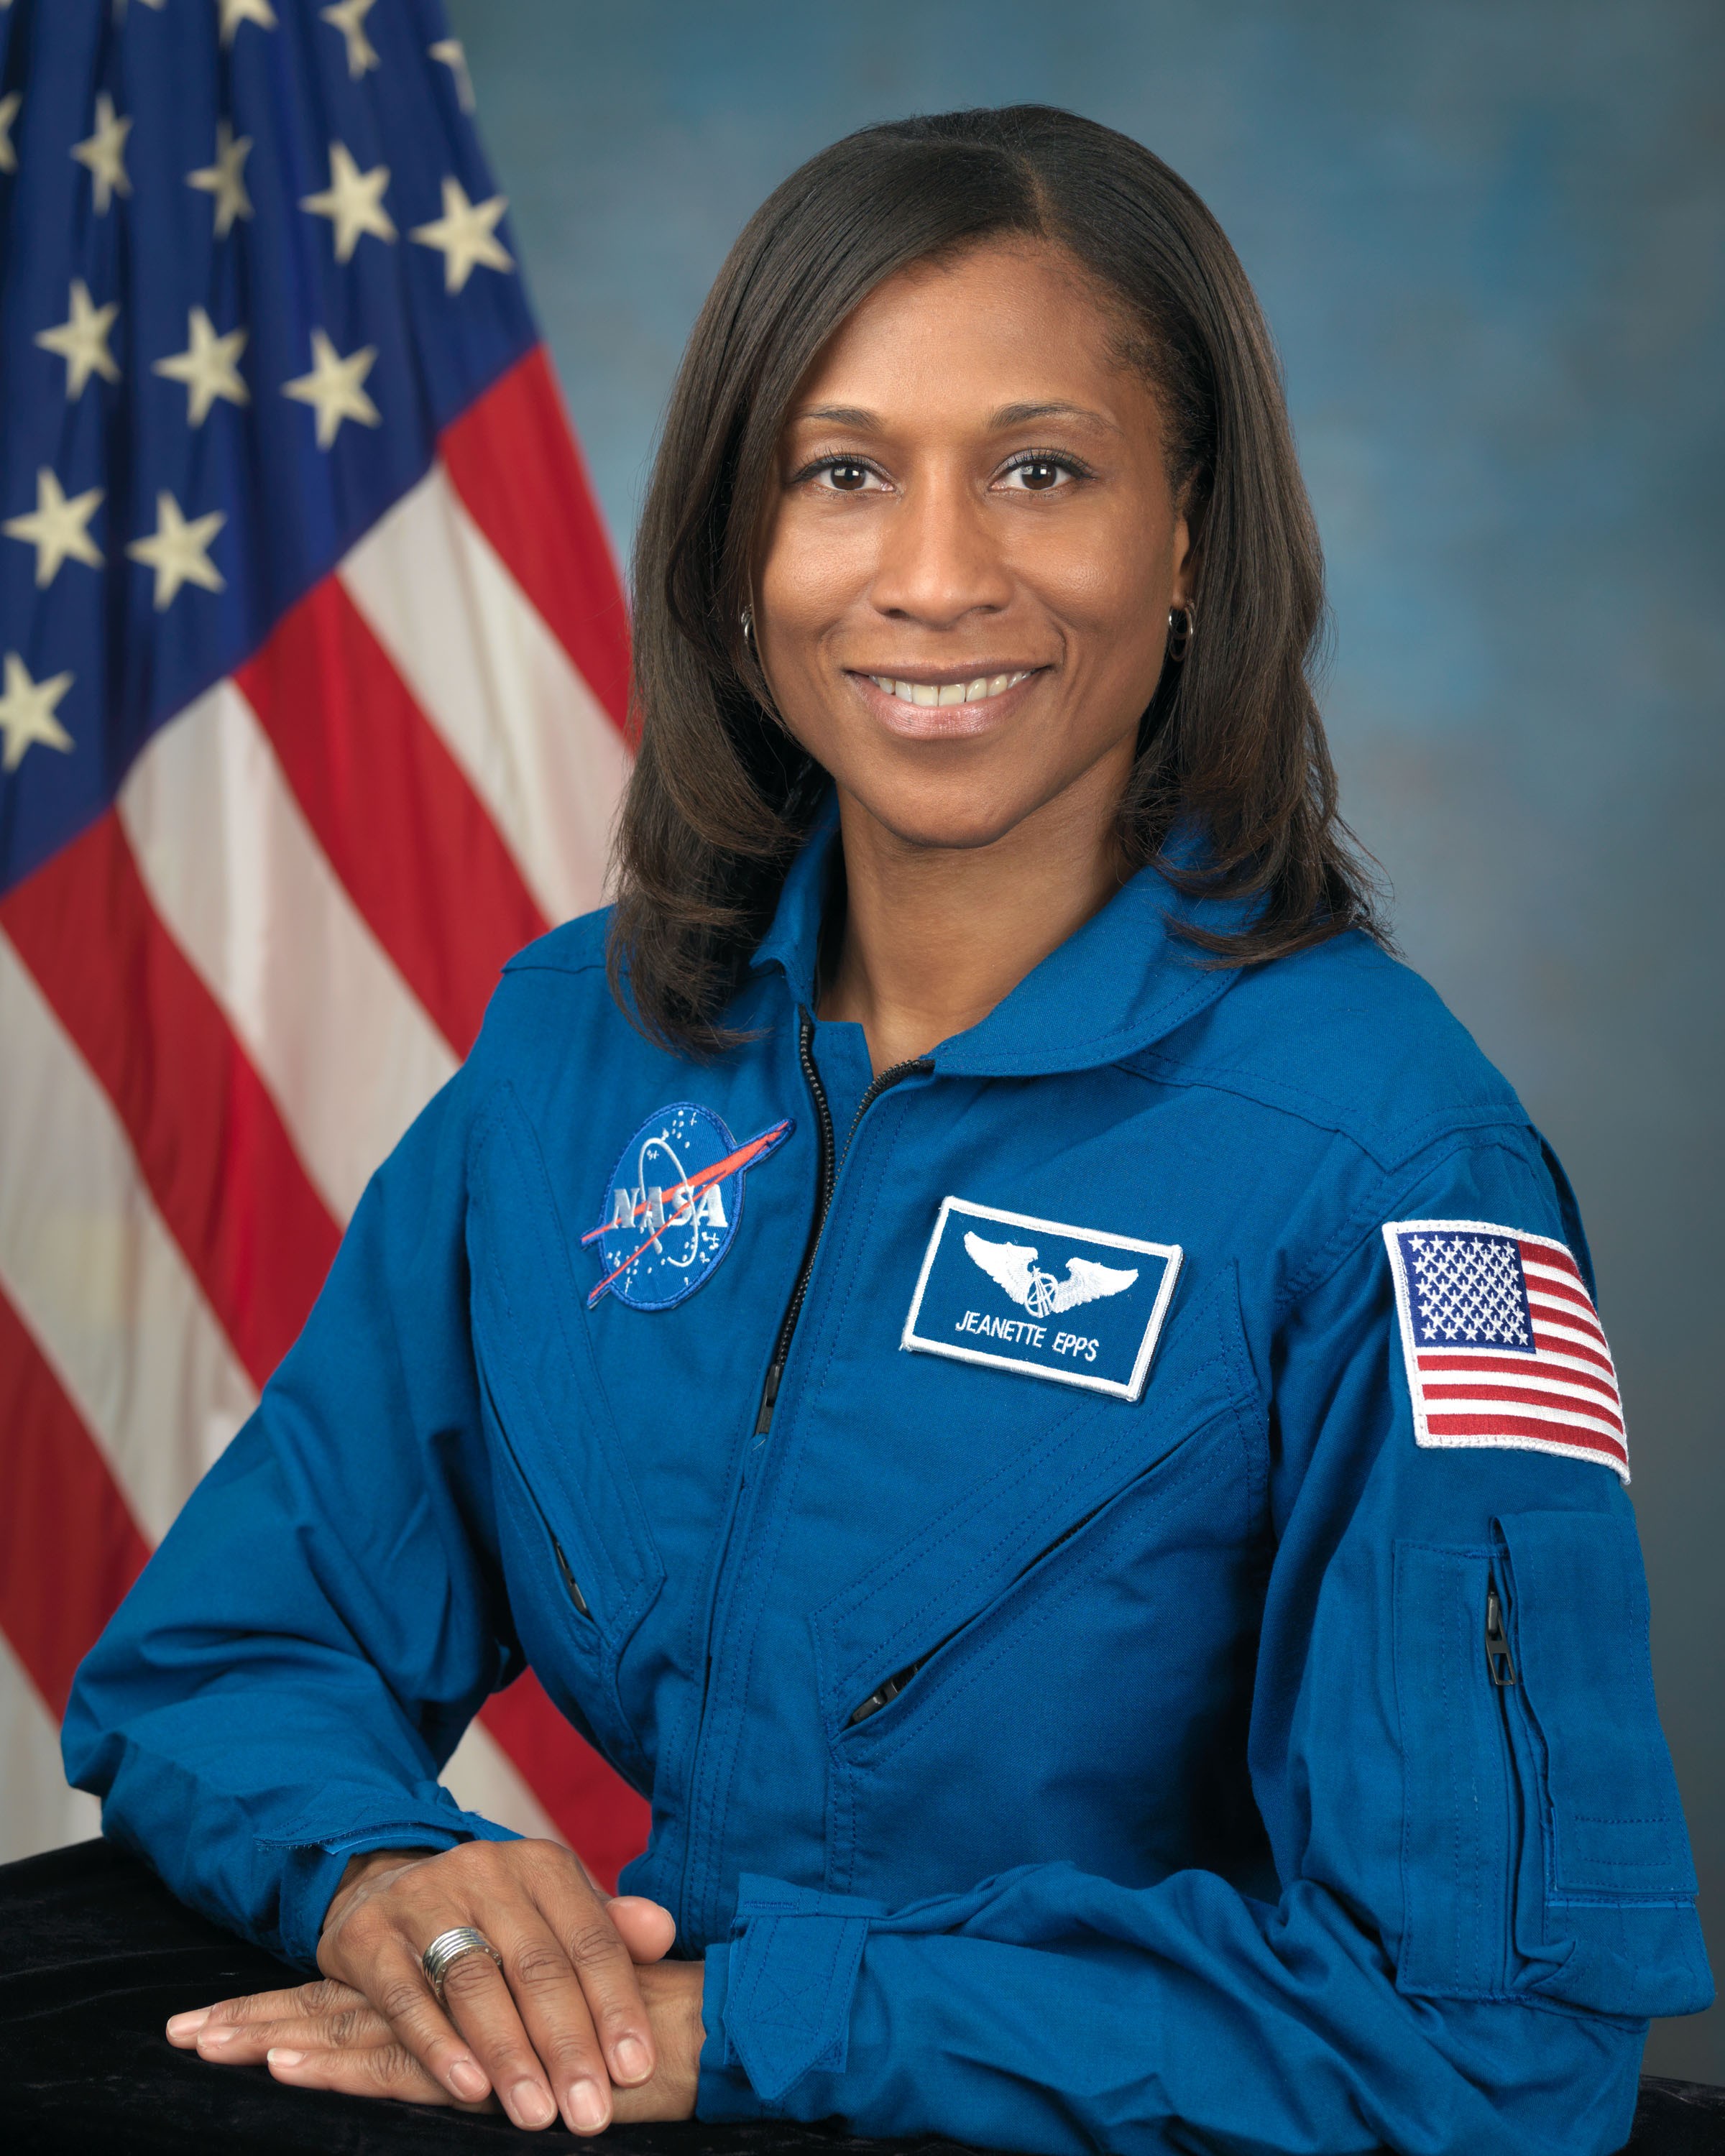 Jeanette Epps nasceu em novembro de 1970; se escolhida, terá 52 anos quando pisar na Lua (Foto: NASA)